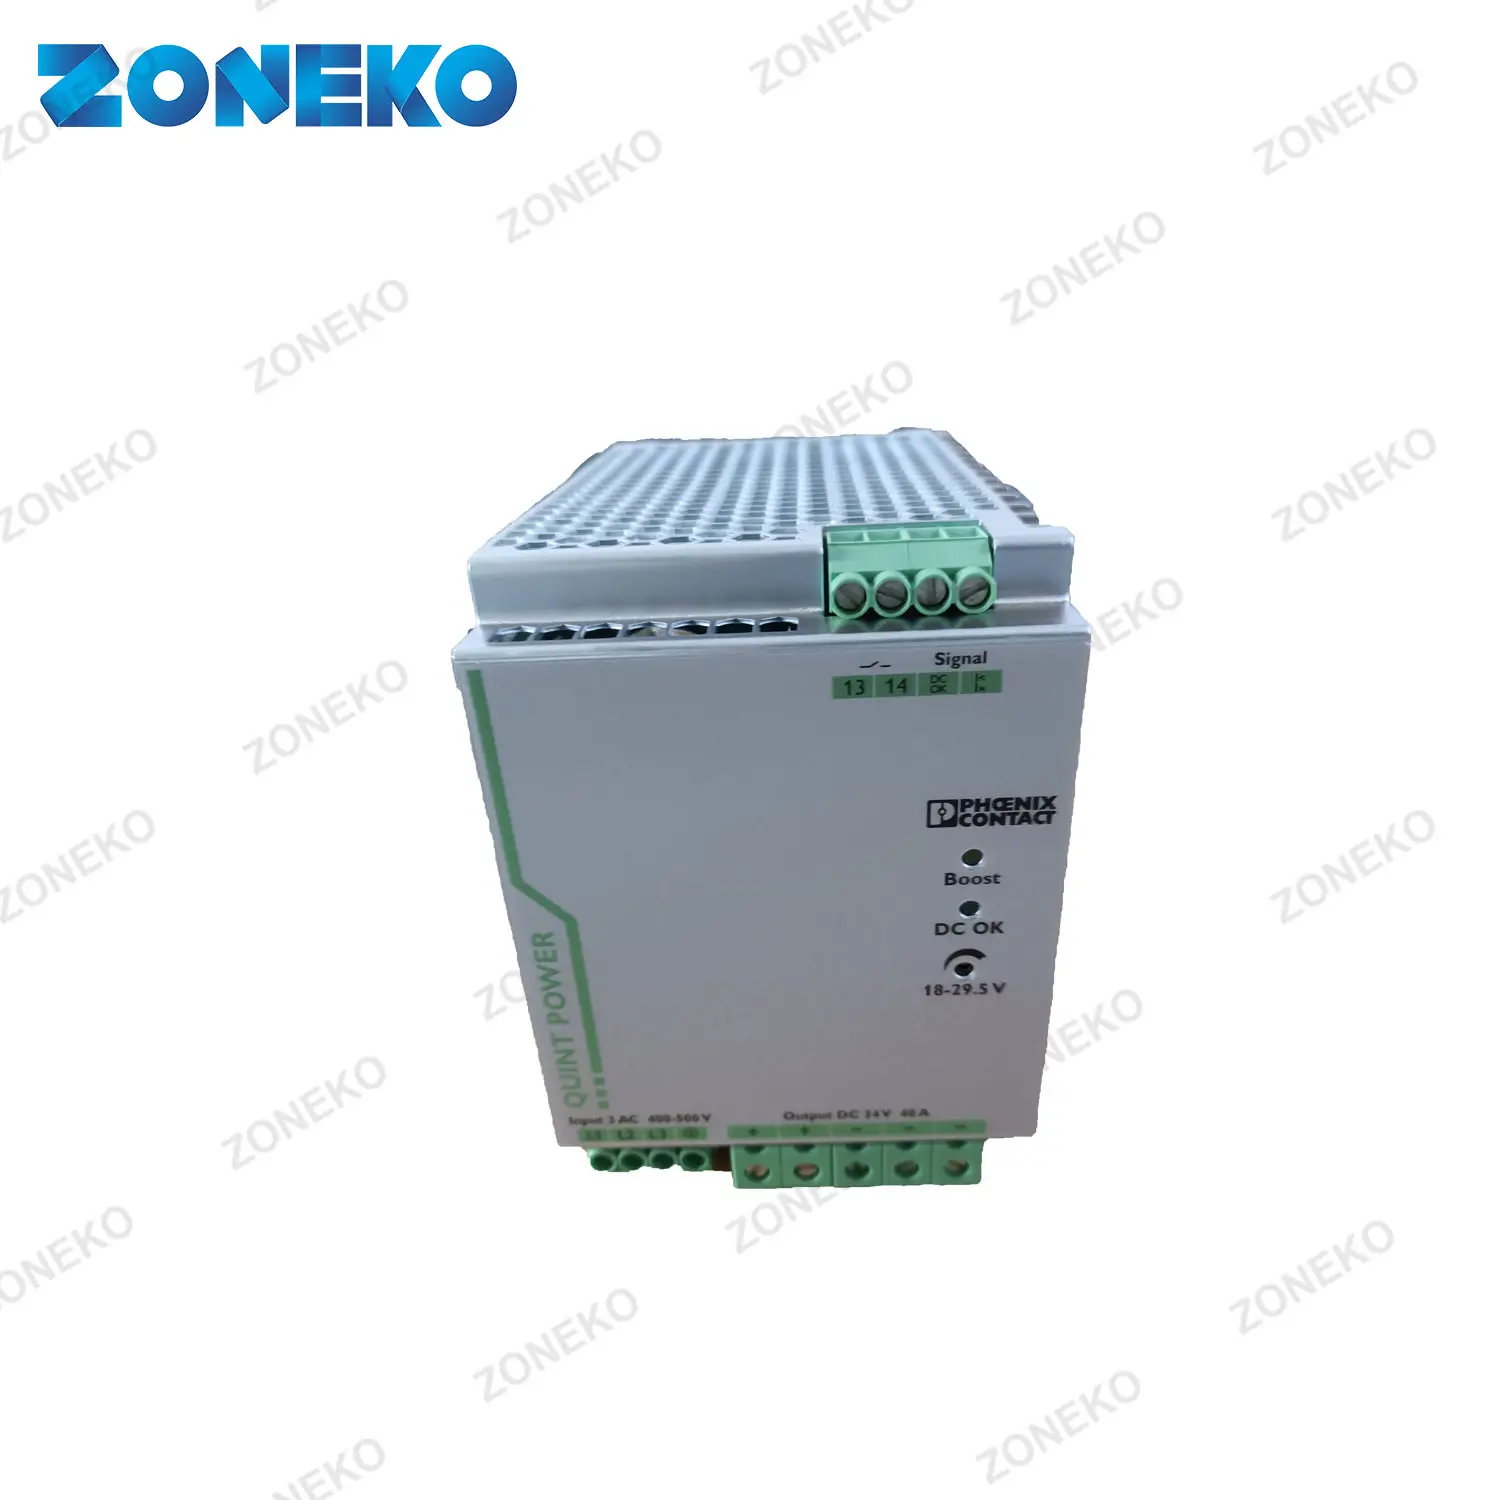 QUINT-PS/3AC/24DC/40 переключатель режима DIN Rail источник питания 400V входное напряжение переменно тока 24V dc Выход 40A 960W 2866802 для Phoe-НИКС Con-tac